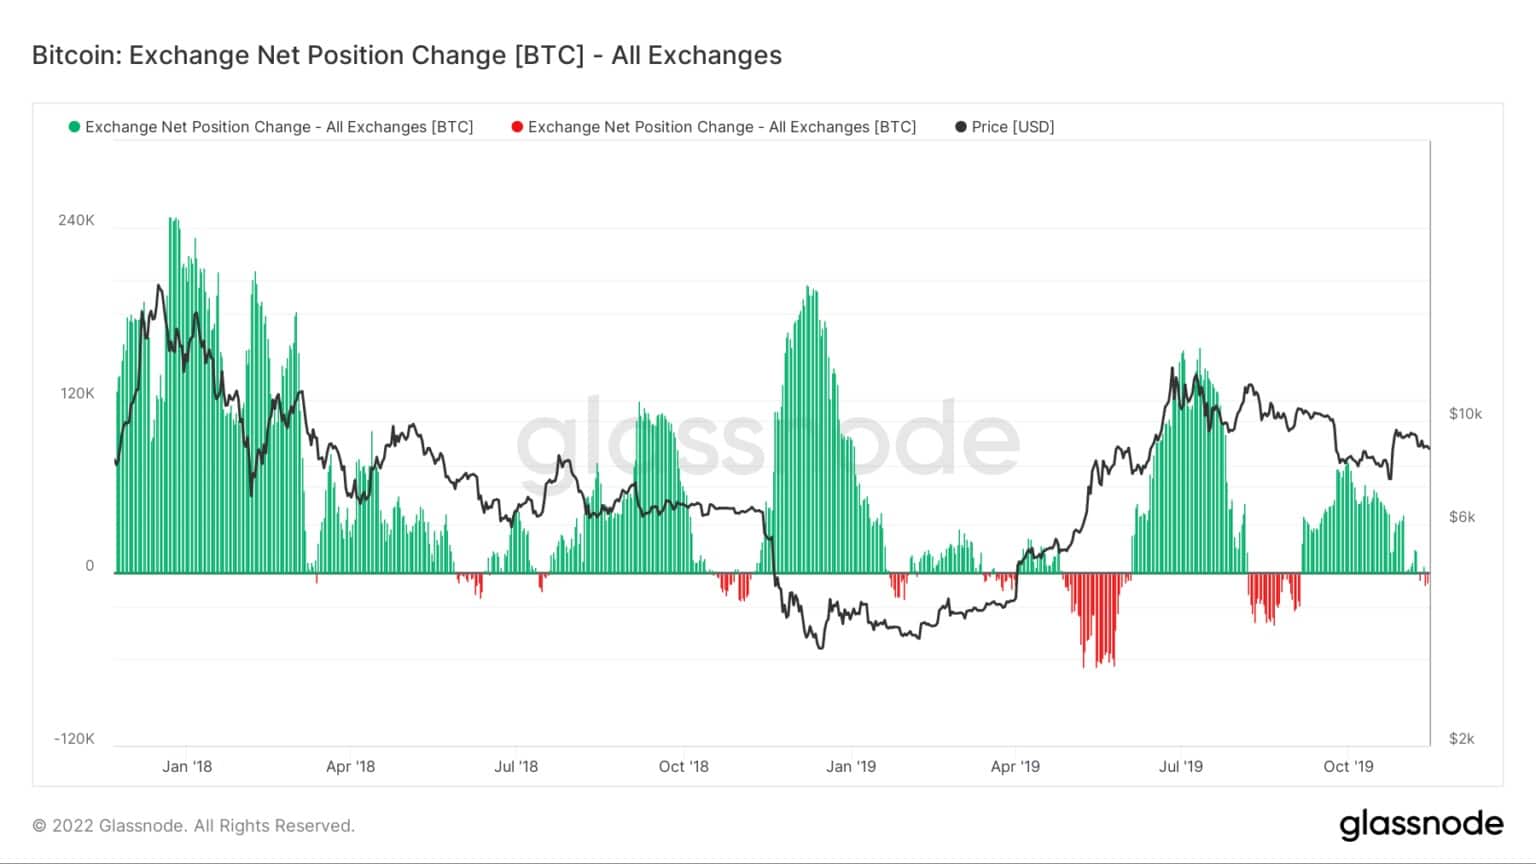 Bitcoin : changement de la position nette de l'échange - Tous les échanges (Source : Glassnode)